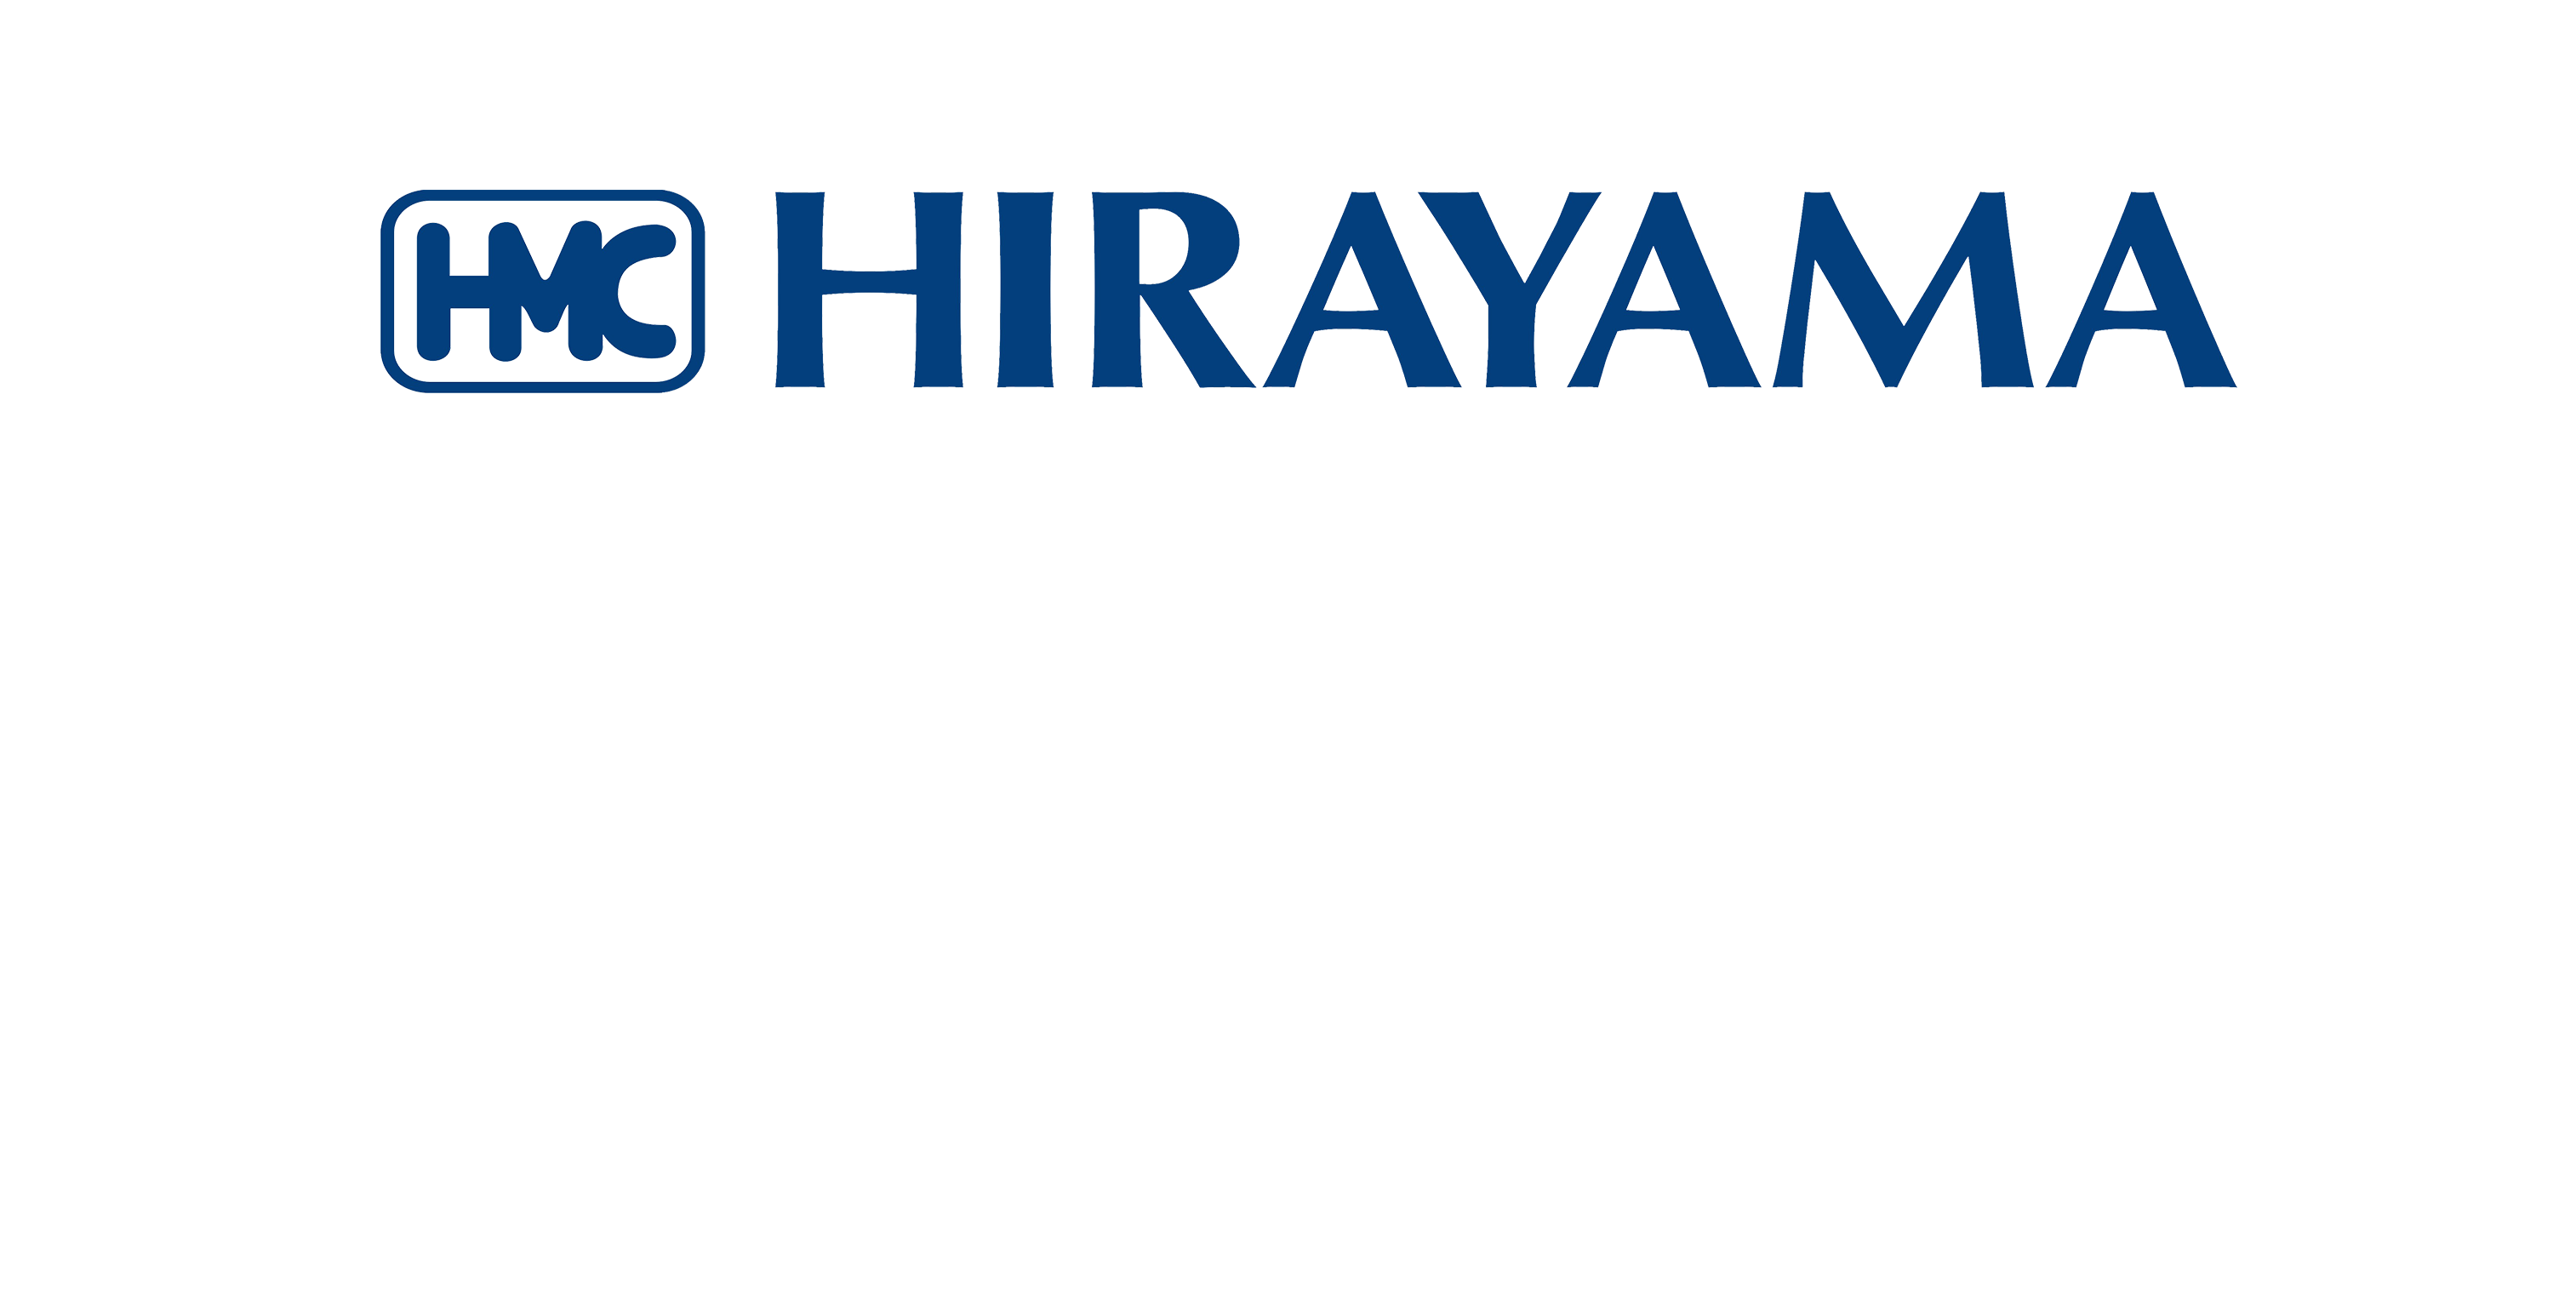 Hirayama